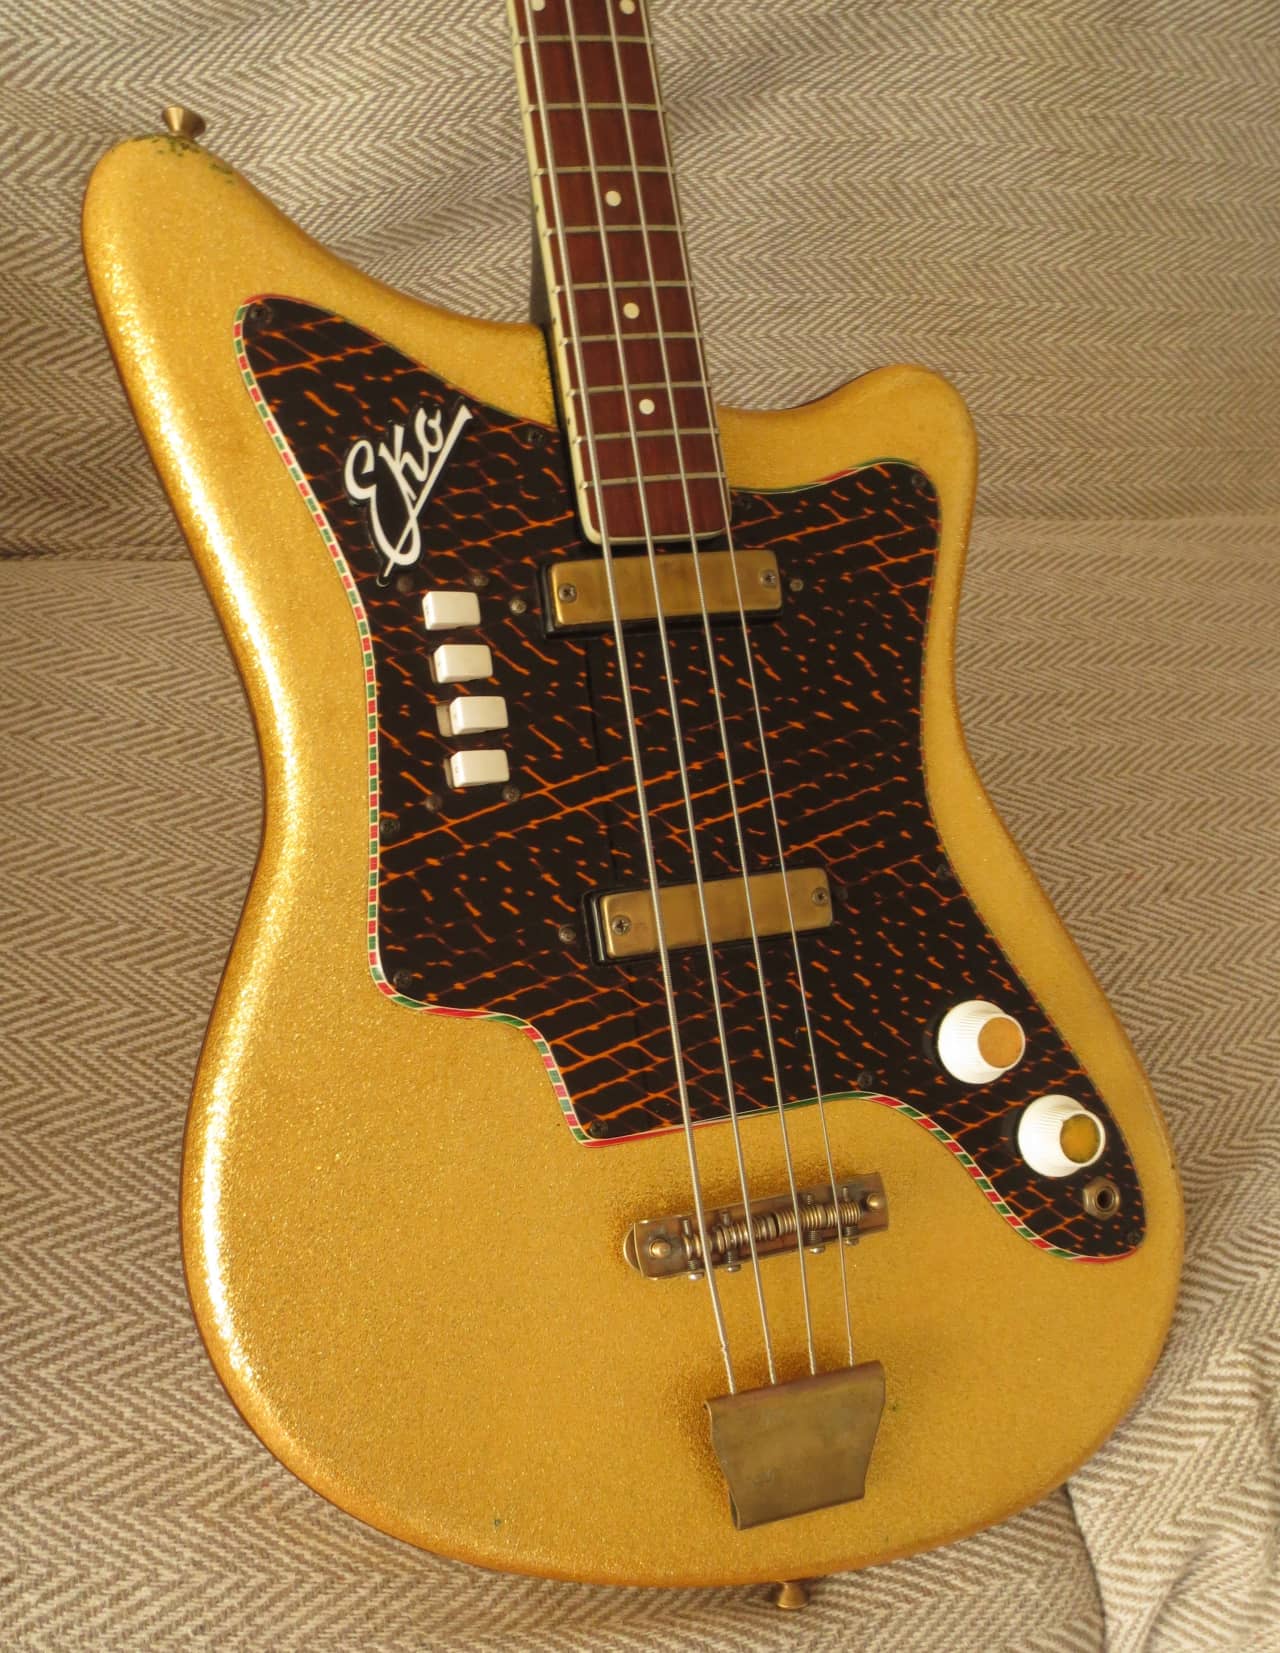 eko guitars 1960